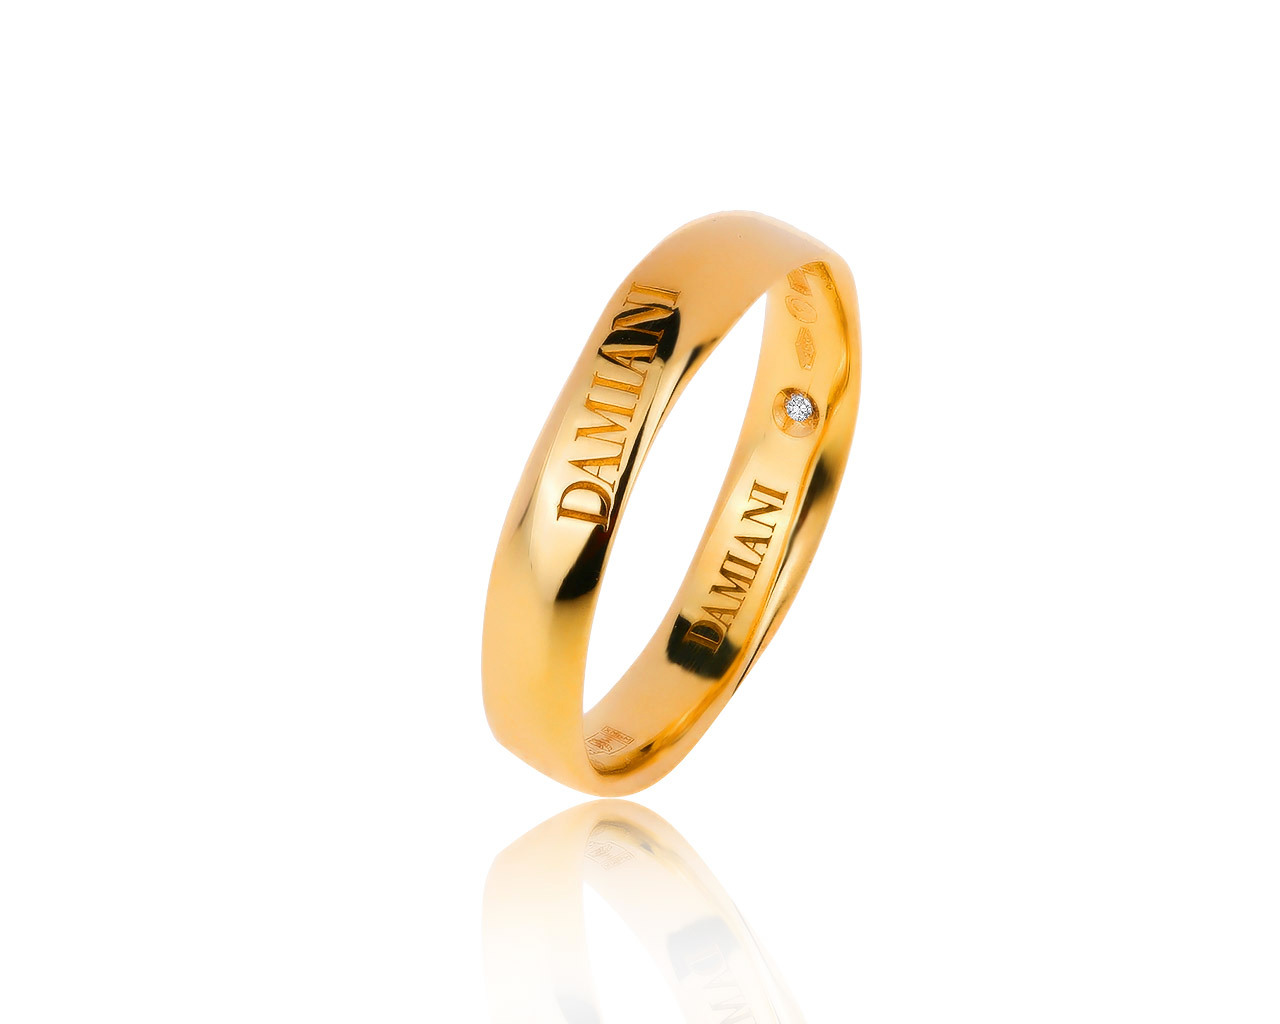 Оригинальное золотое кольцо с бриллиантом 0.05ct Damiani